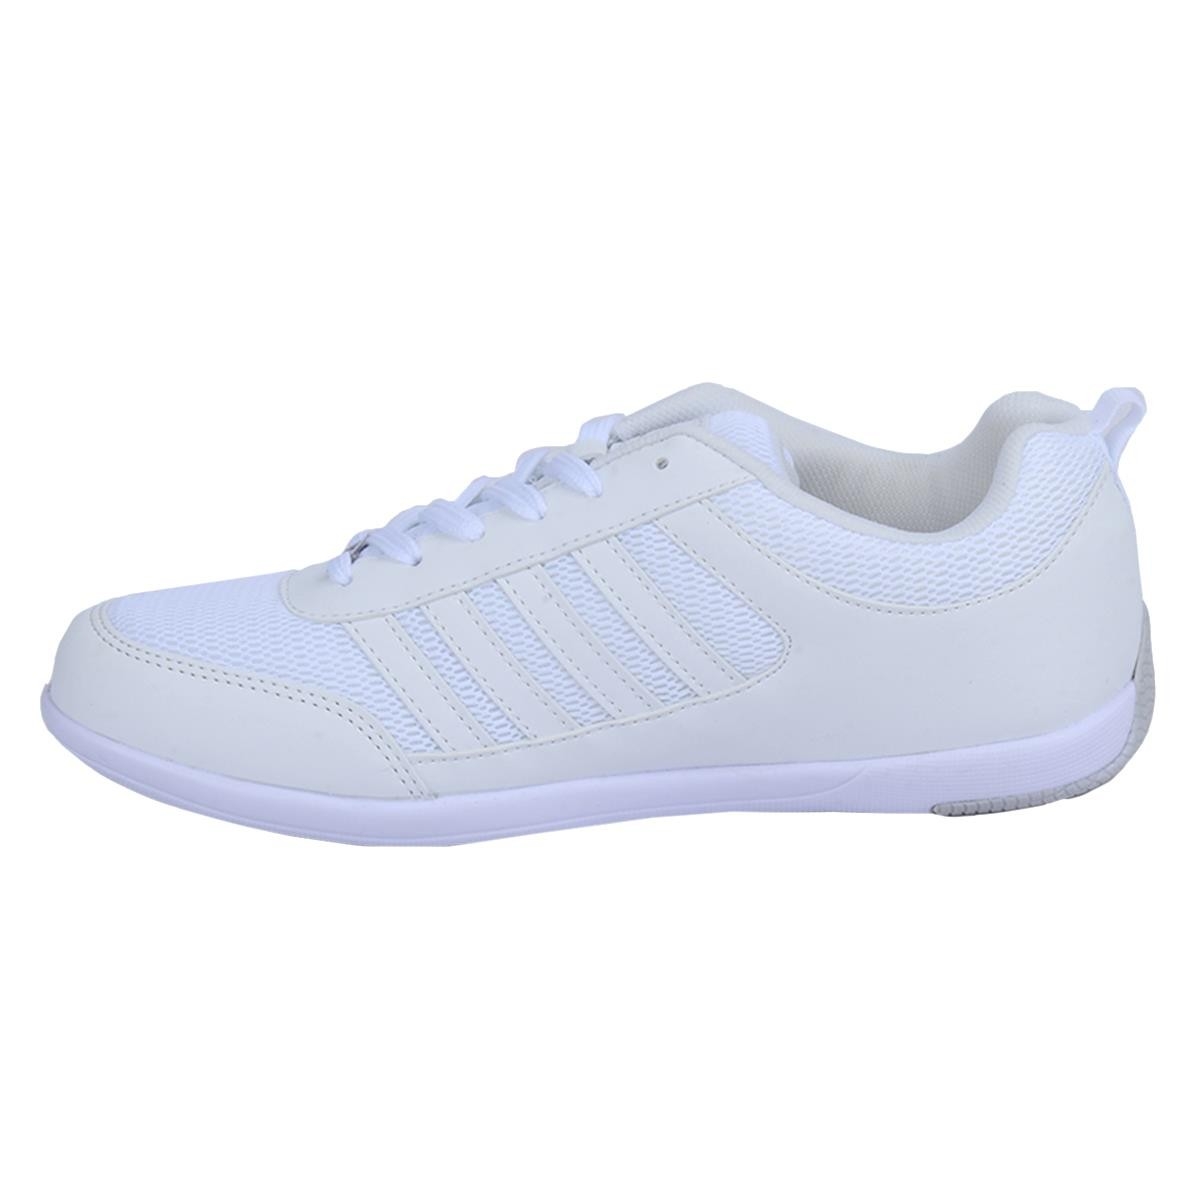 Flo 211-7320 Asper Beyaz Erkek Sneakers Spor Ayakkabı. 3